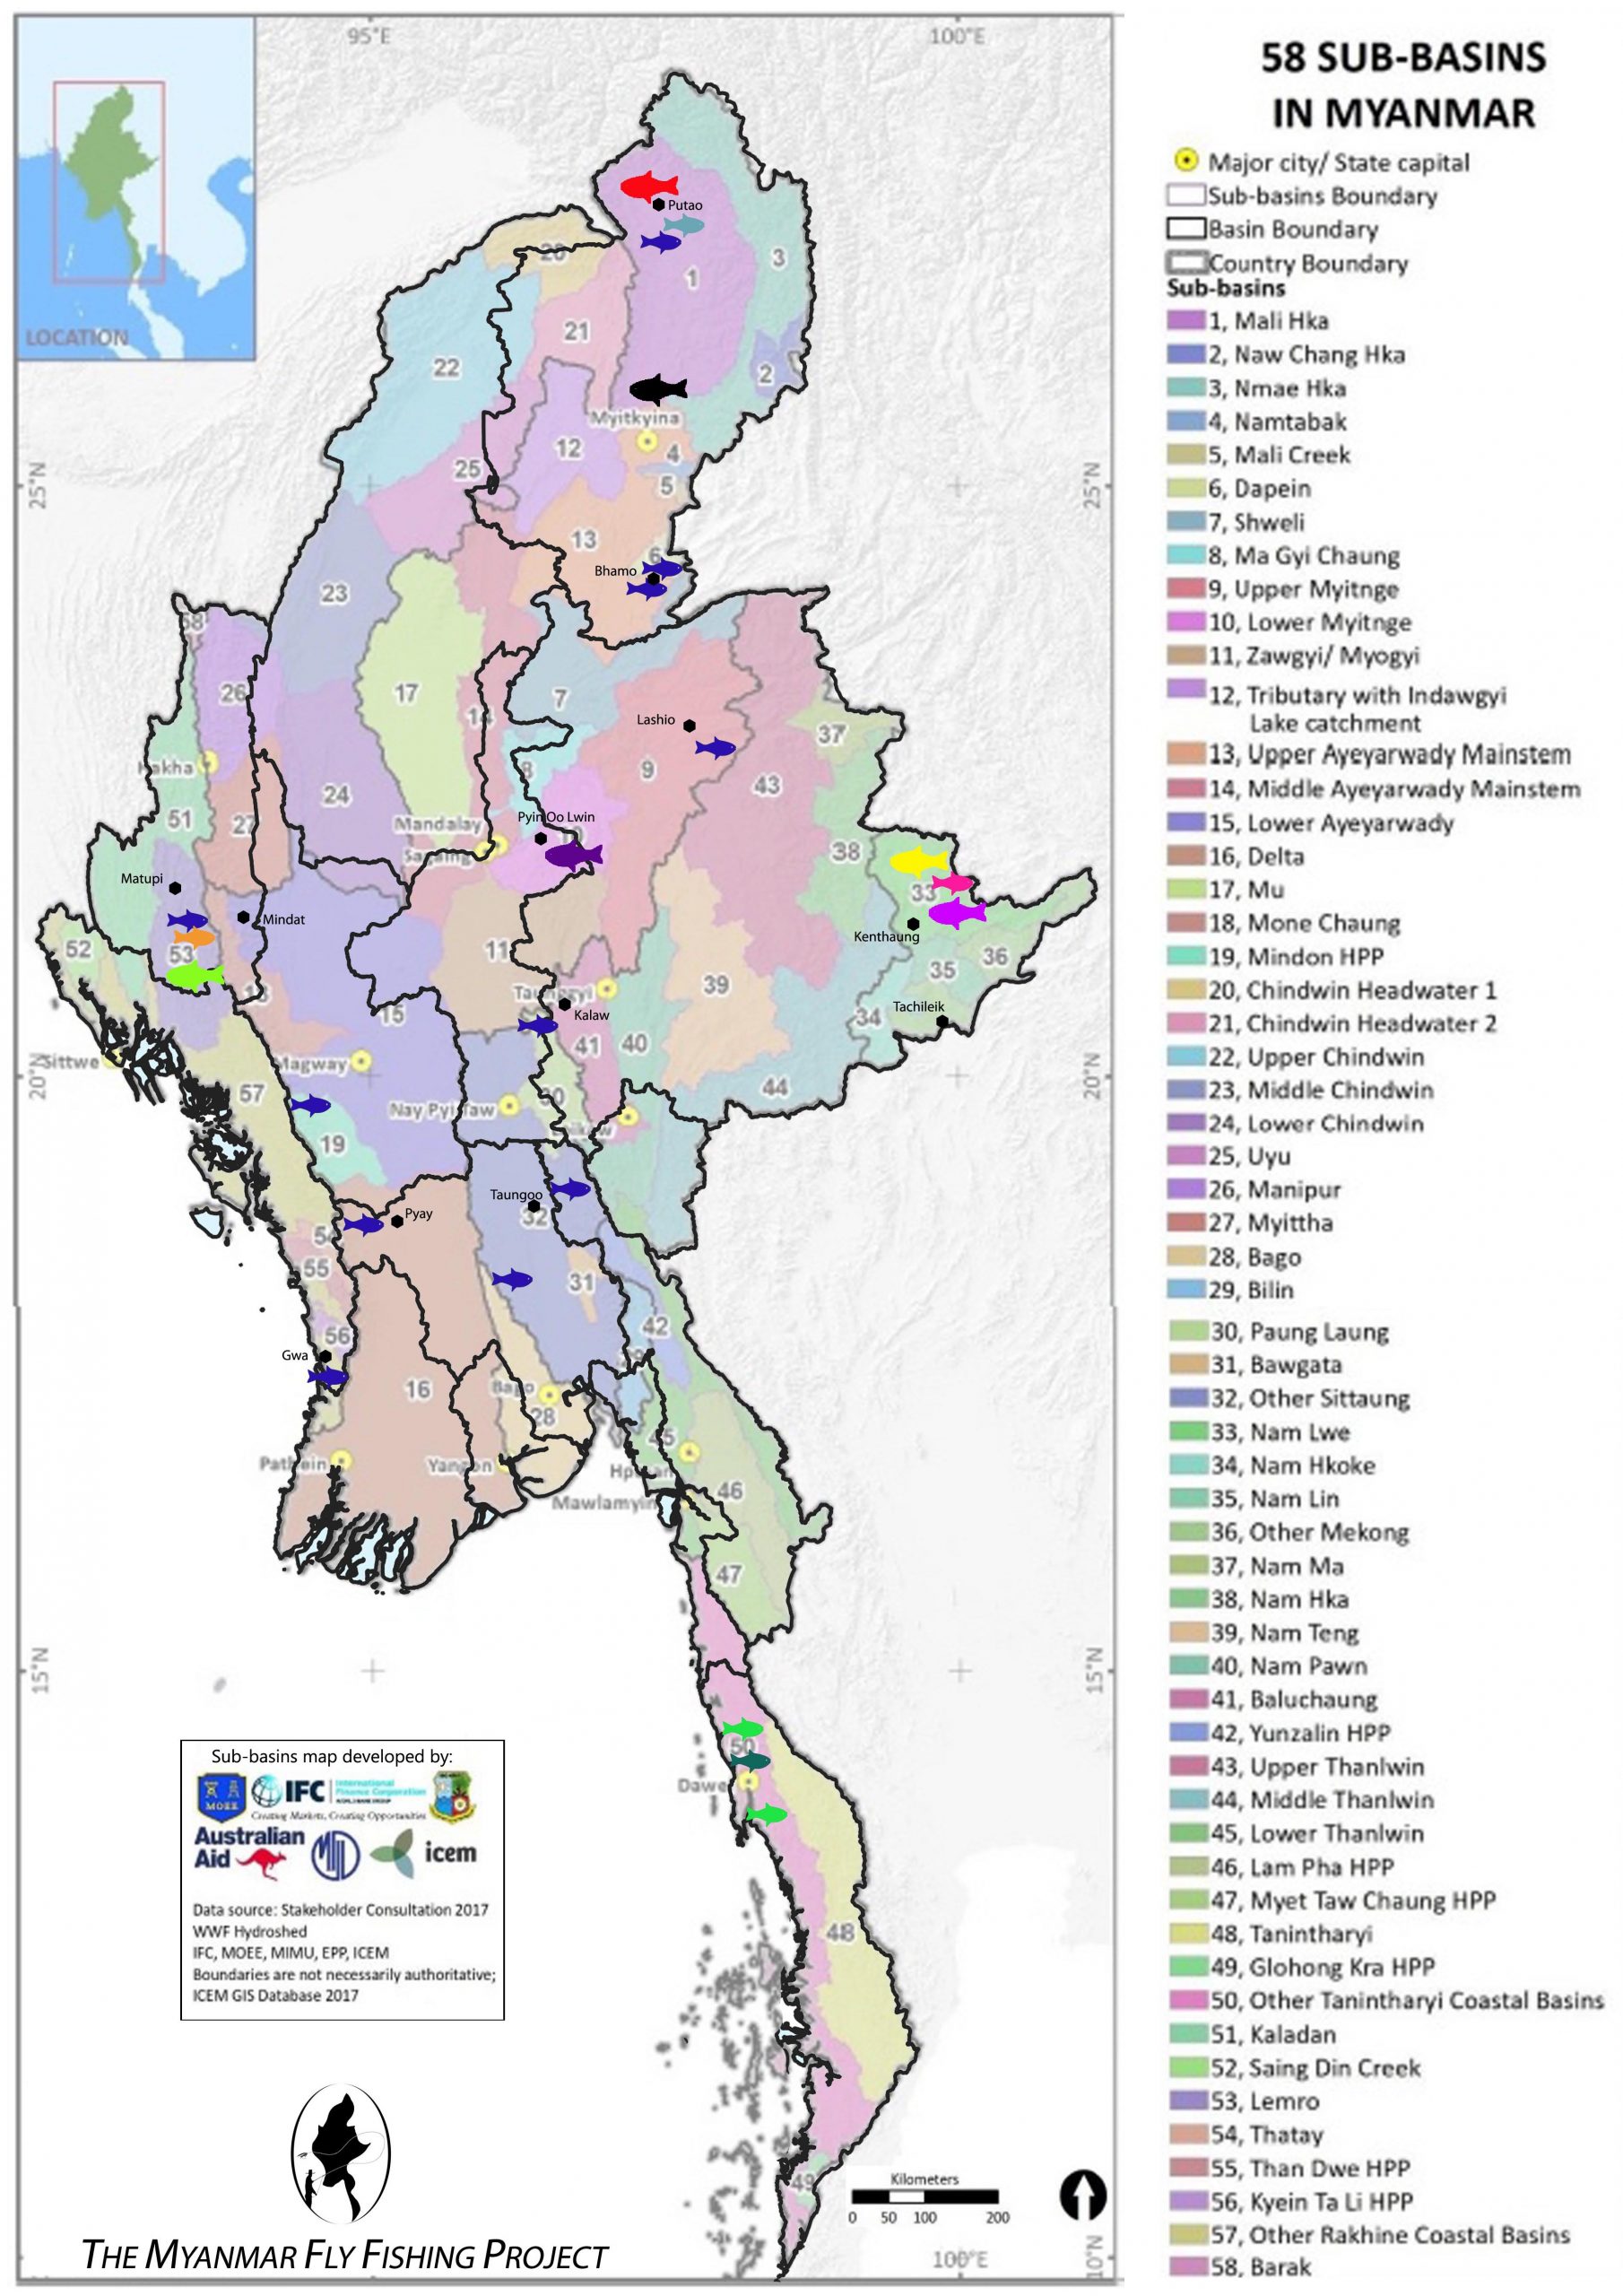 Mahseer Species Distribution across Myanmar